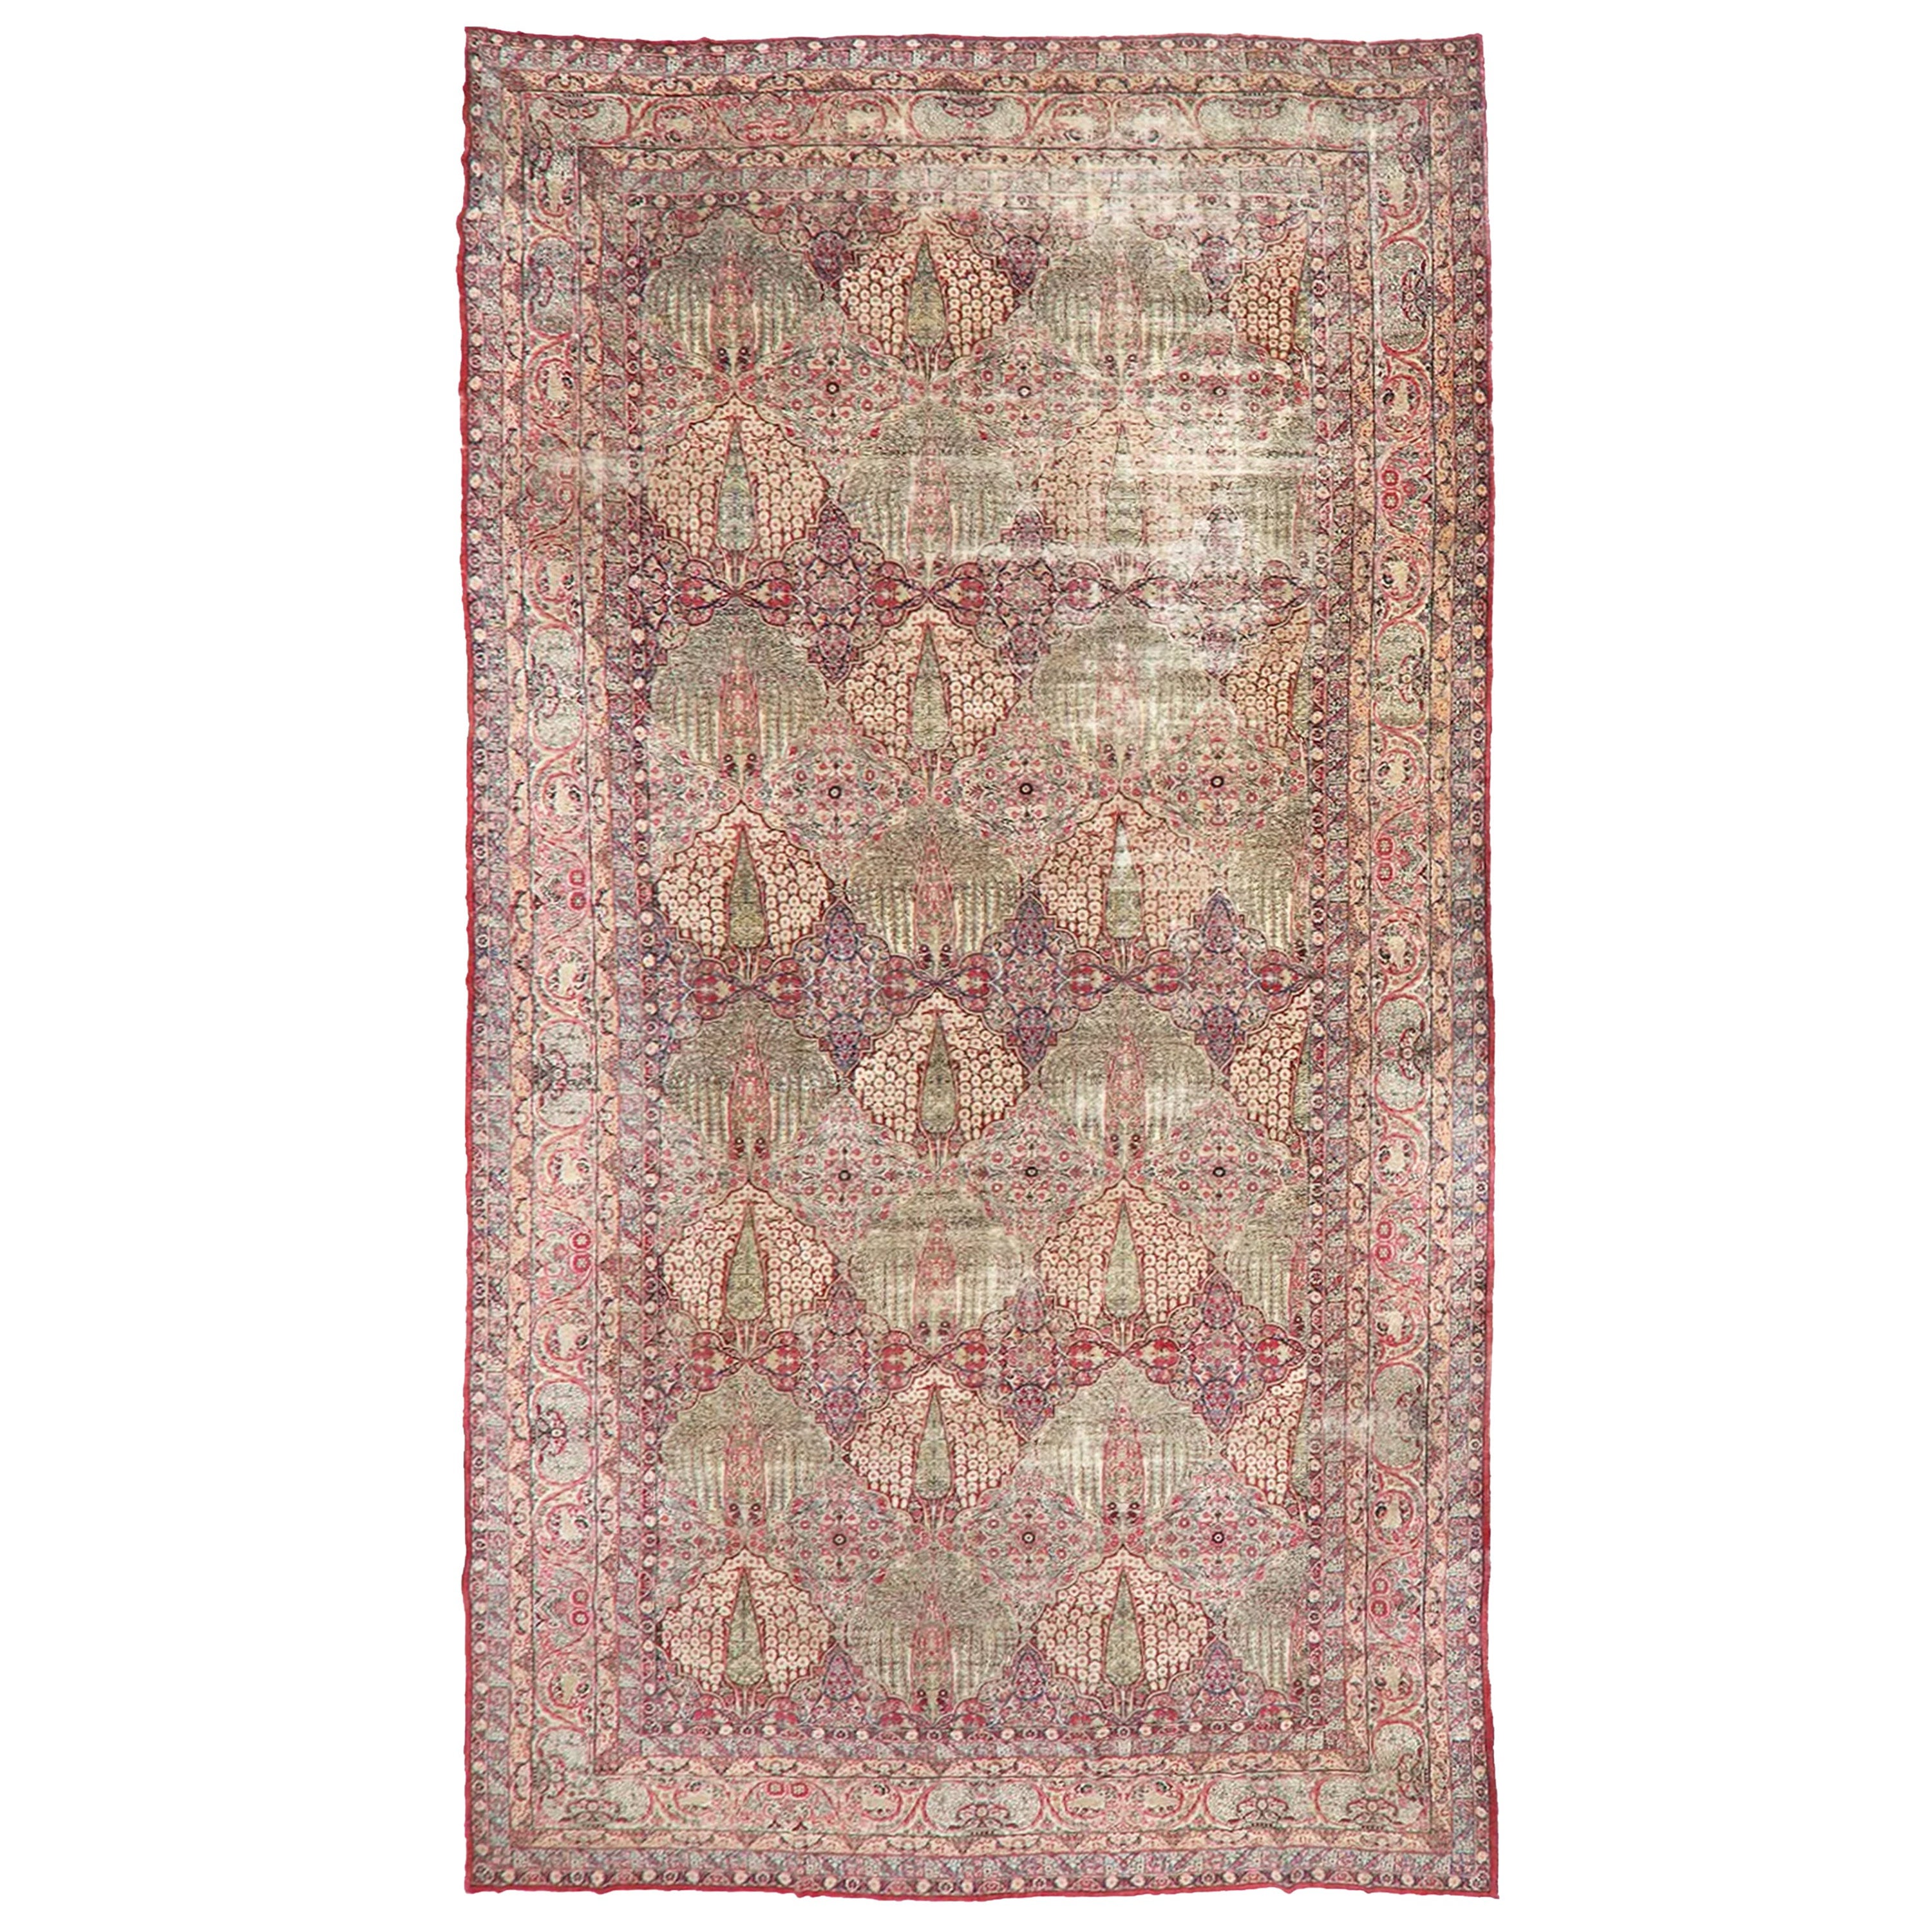 Sensational Palatial Antique Kerman Lavar Carpet / Rug, C.1915 For Sale